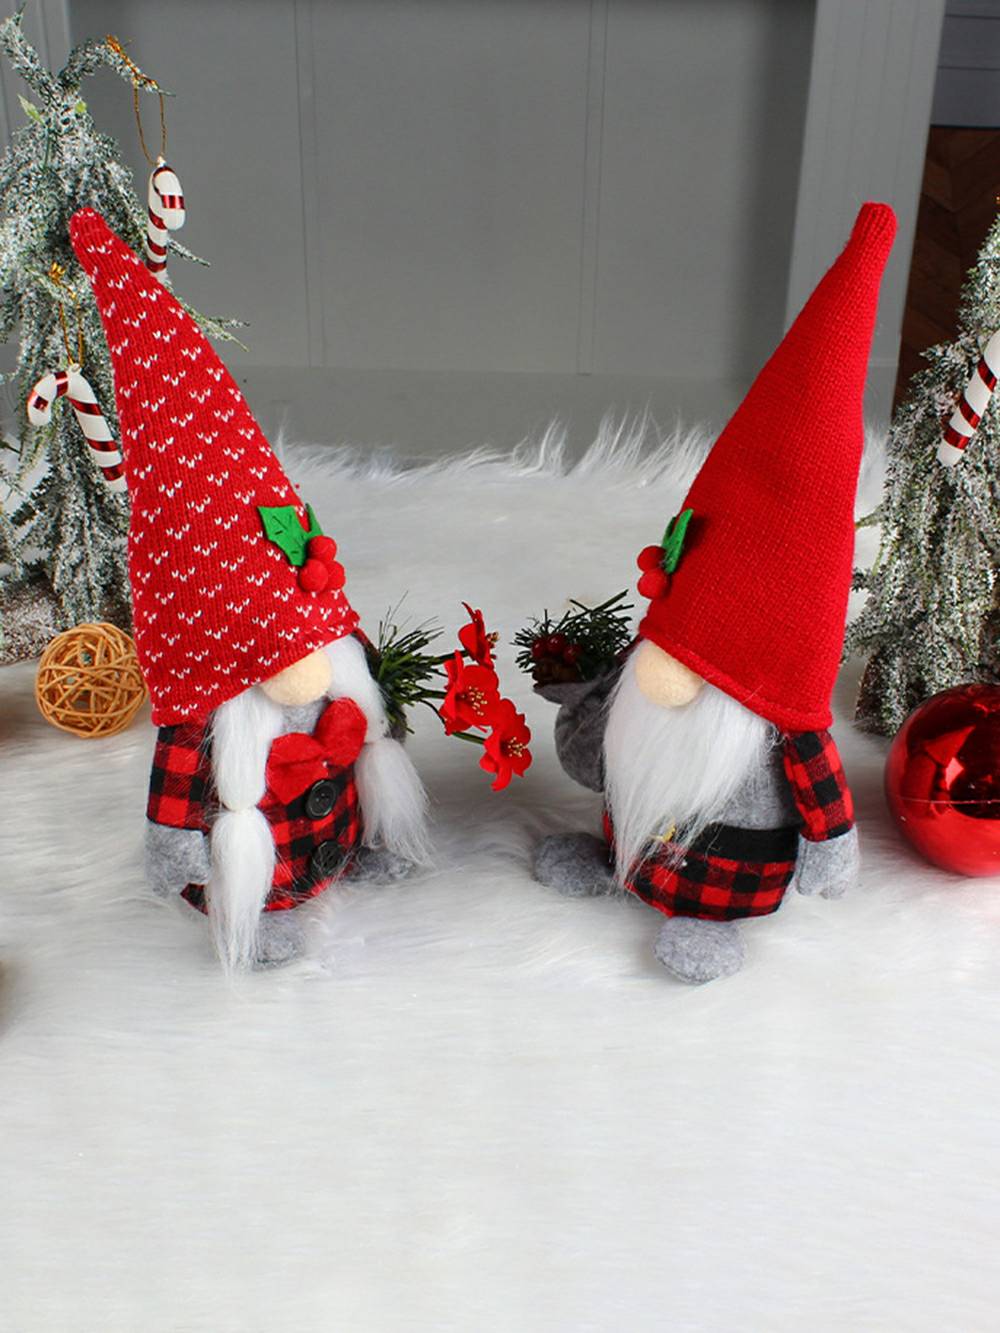 Christmas Plysch Cherry Rudolph Dwarf Doll